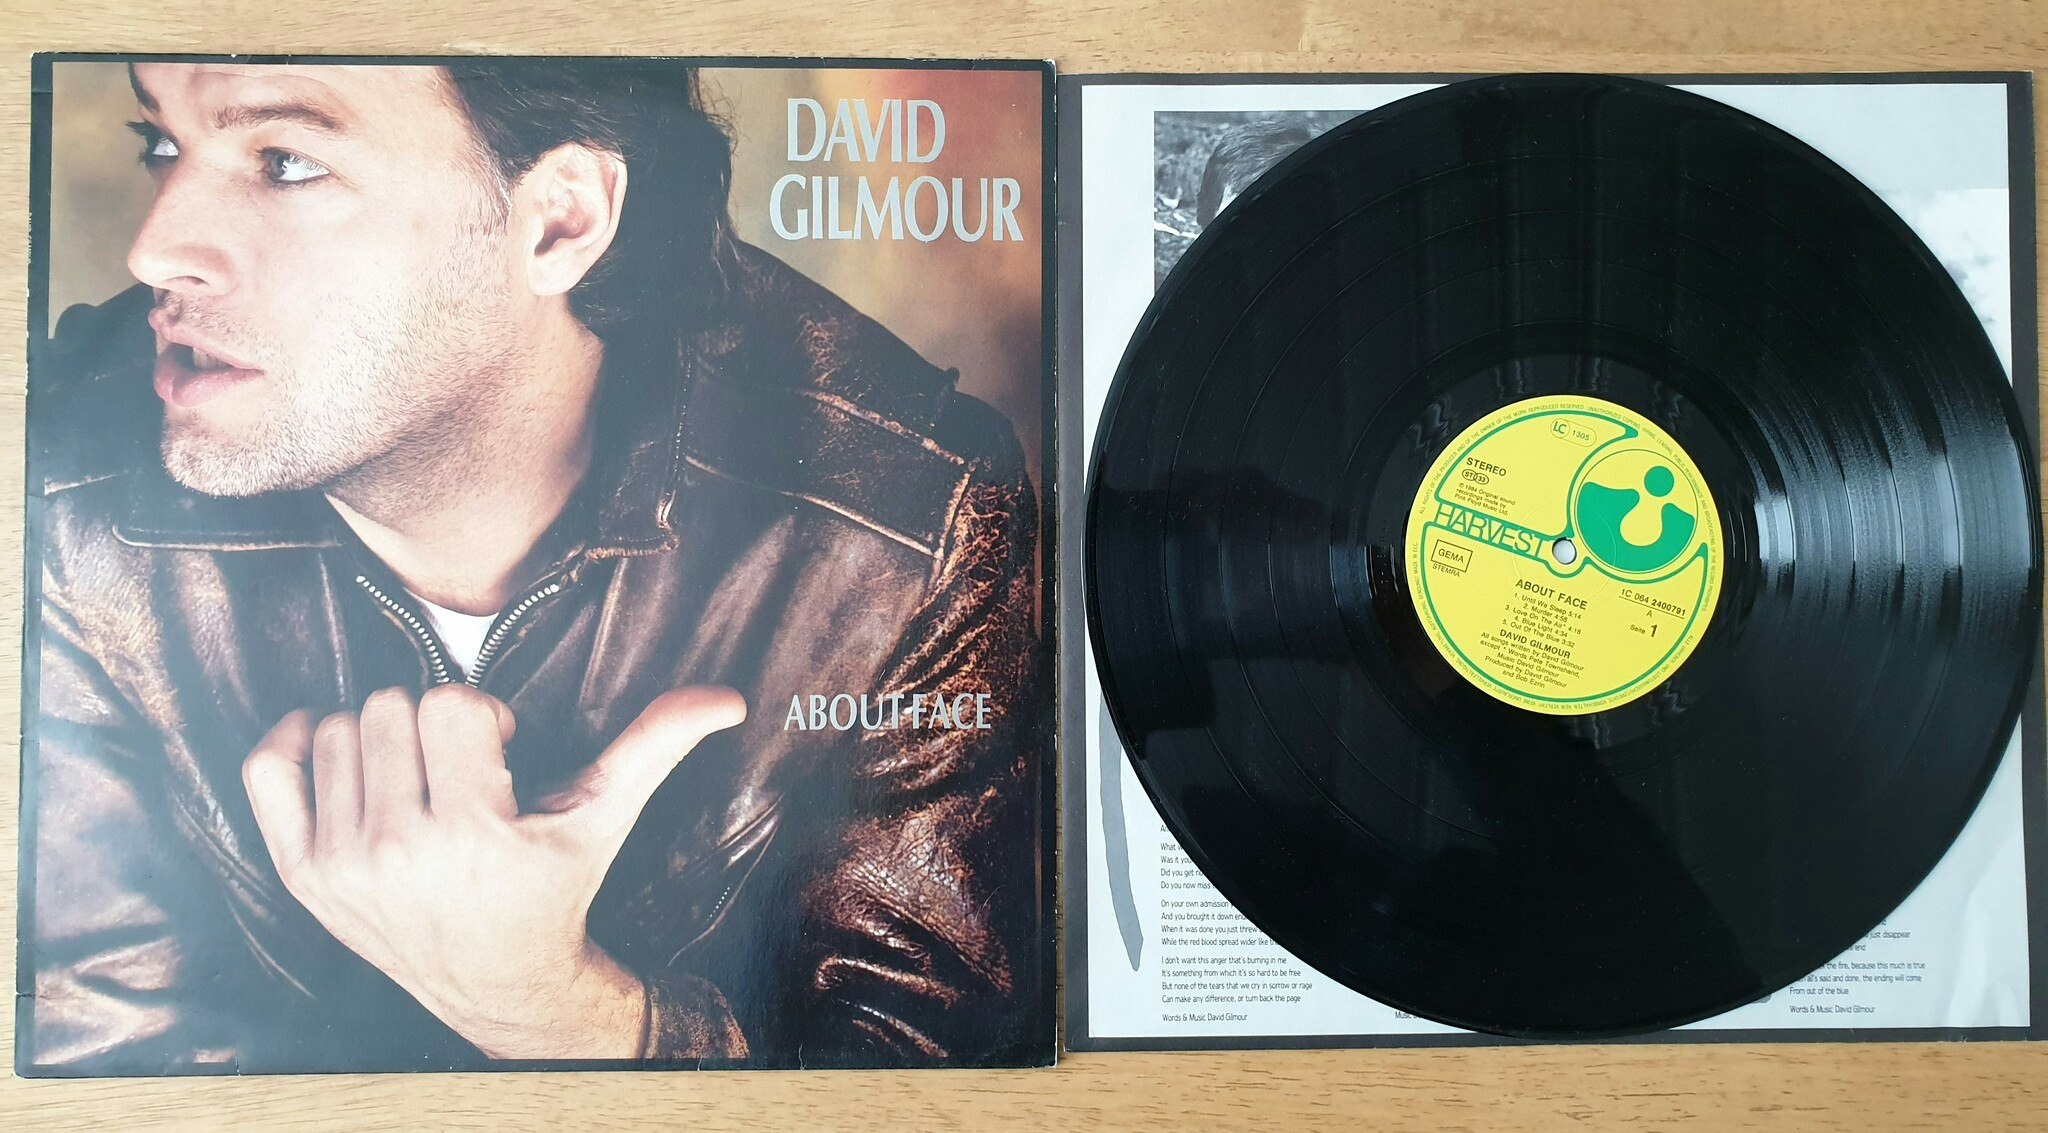 David Gilmour, About face. Vinyl LP